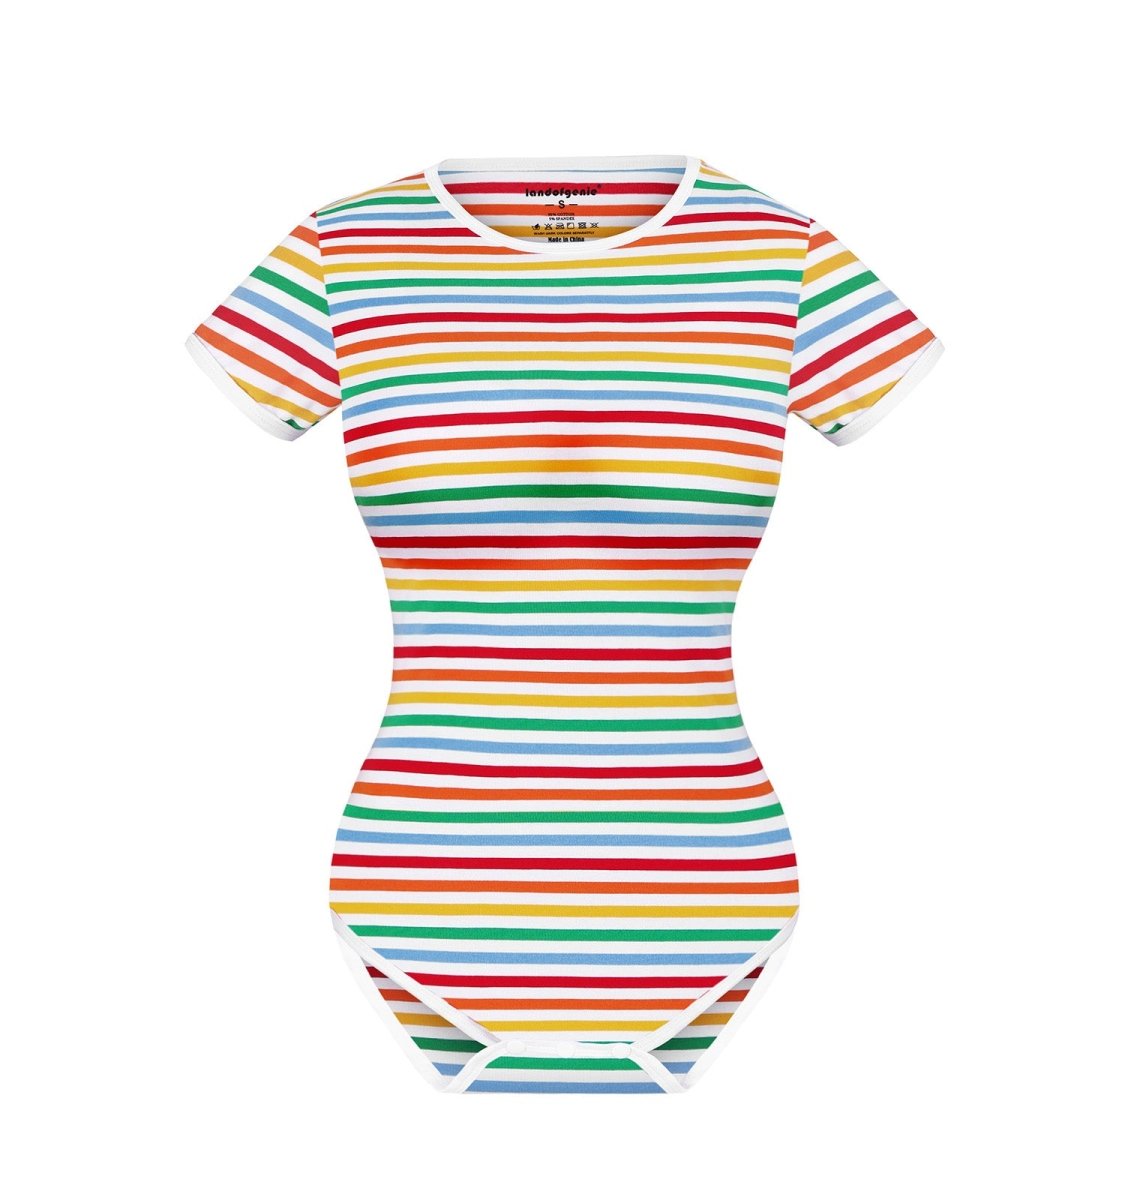 http://landofgenie.com/cdn/shop/products/landofgenie-cotton-women-onesie-rainbow-stripe-girl-266887.jpg?v=1708658366